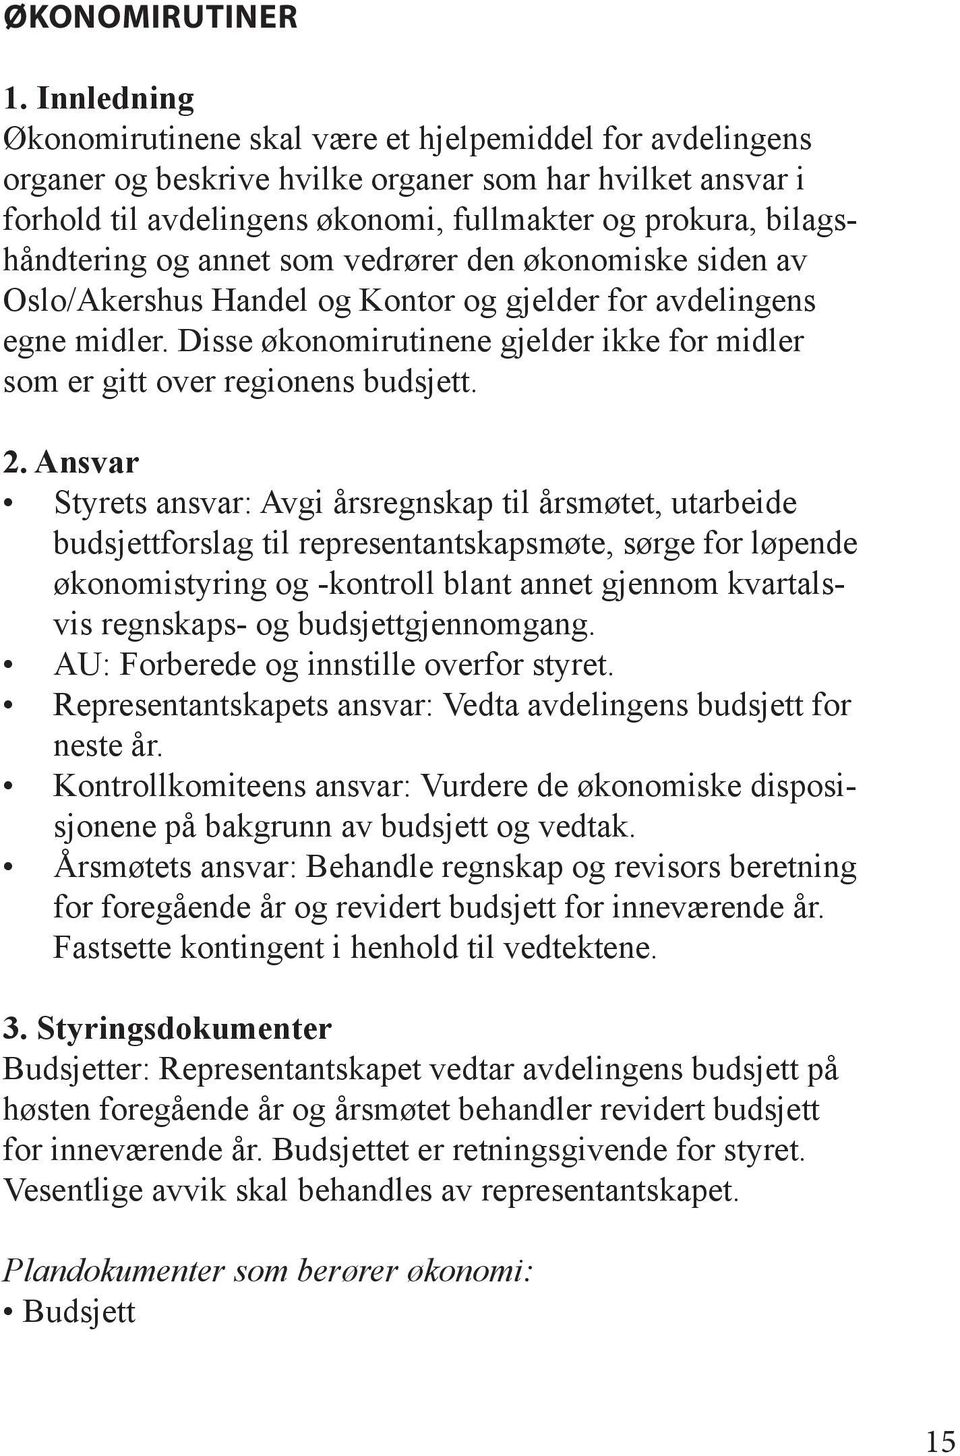 bilagshåndtering og annet som vedrører den økonomiske siden av Oslo/Akershus Handel og Kontor og gjelder for avdelingens egne midler.